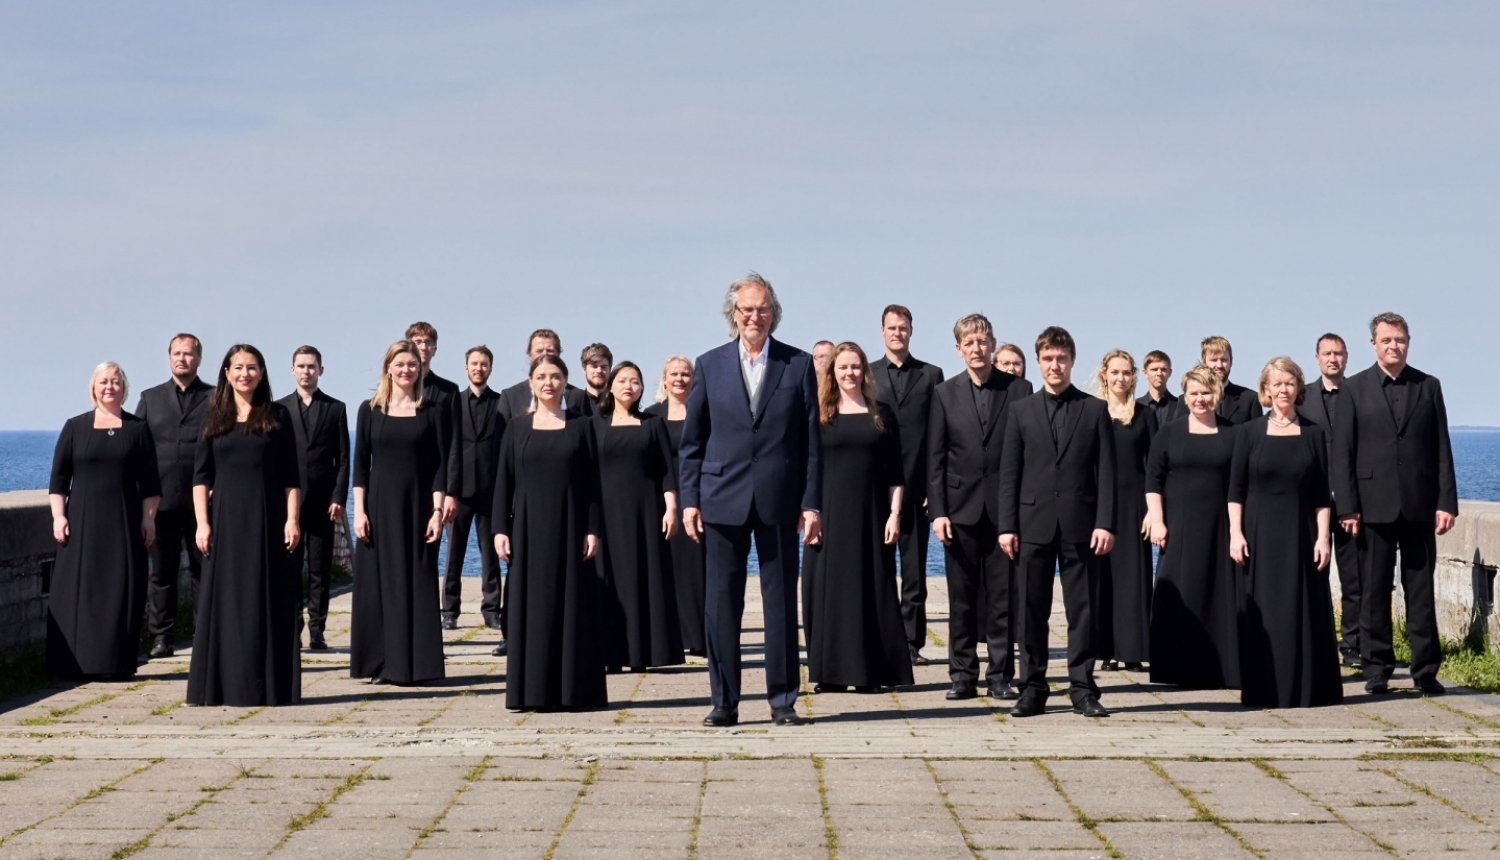  Igaunijas filharmoniskais kamerkoris, foto: Kaupo Kikkas